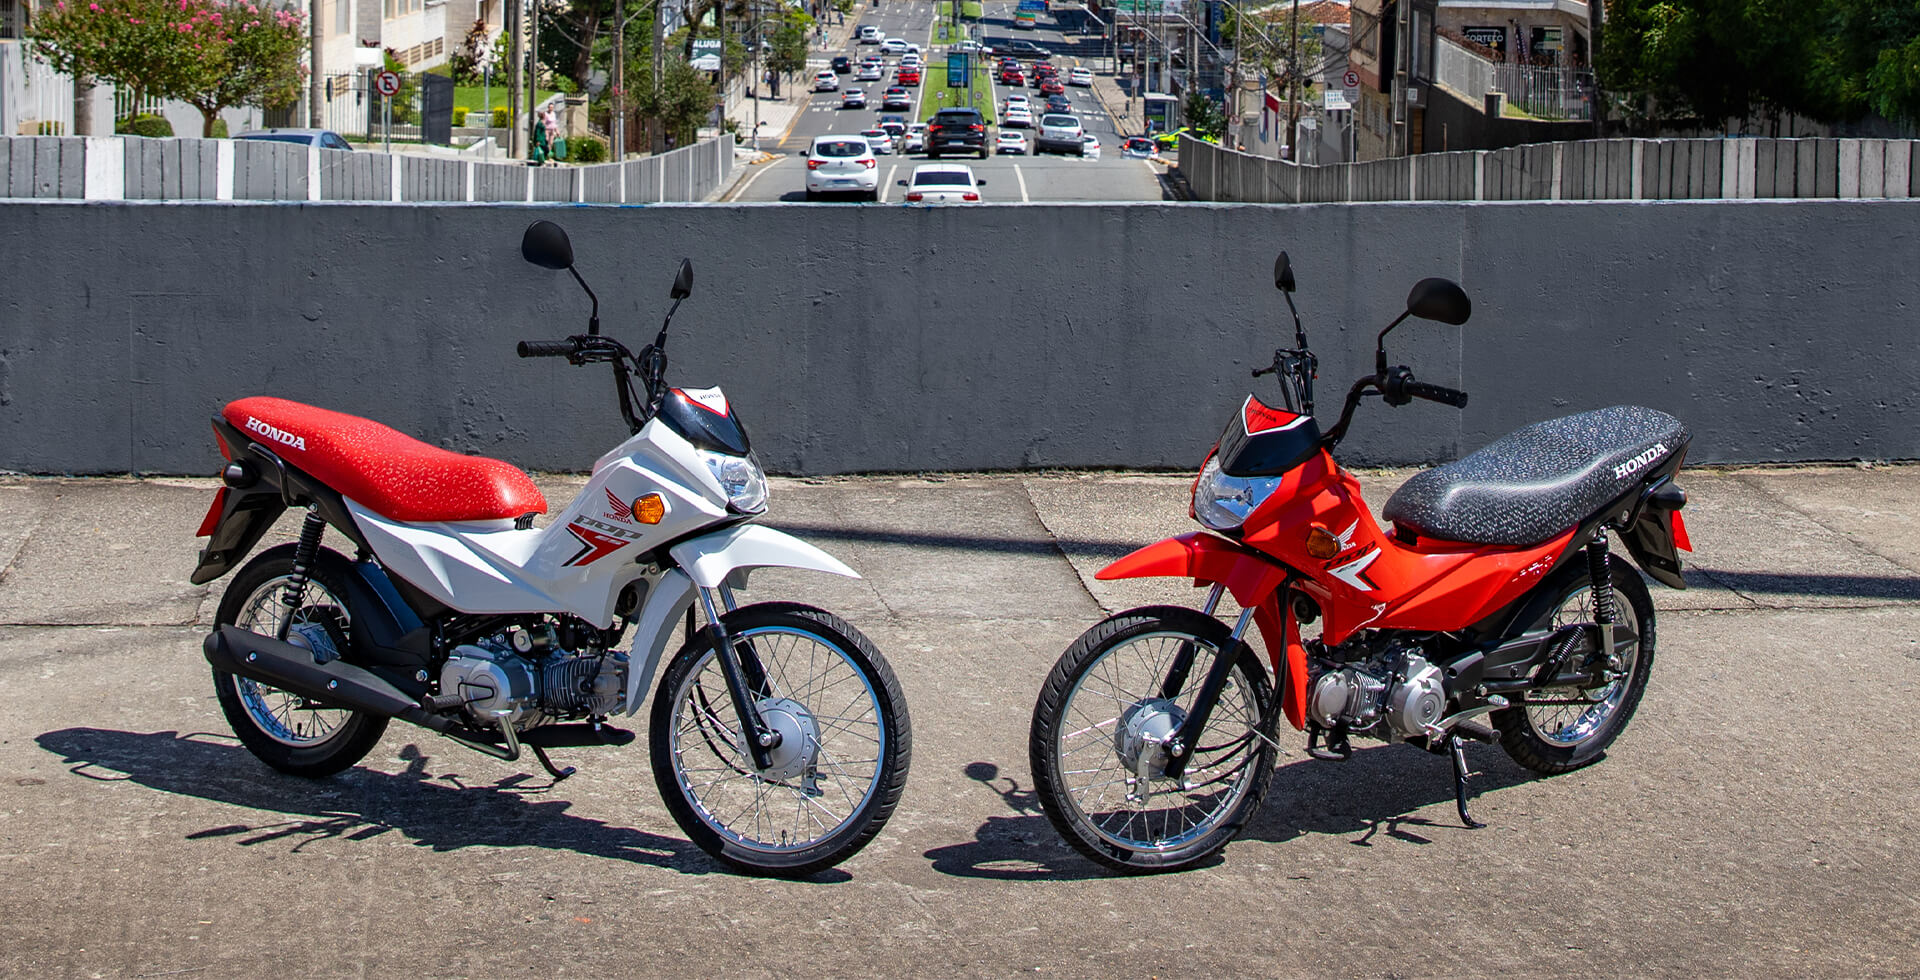 Duas Motos Pop 110i ES nas cores Branco Ross White e Vermelho Fighting Red estacionadas em cenário urbano.